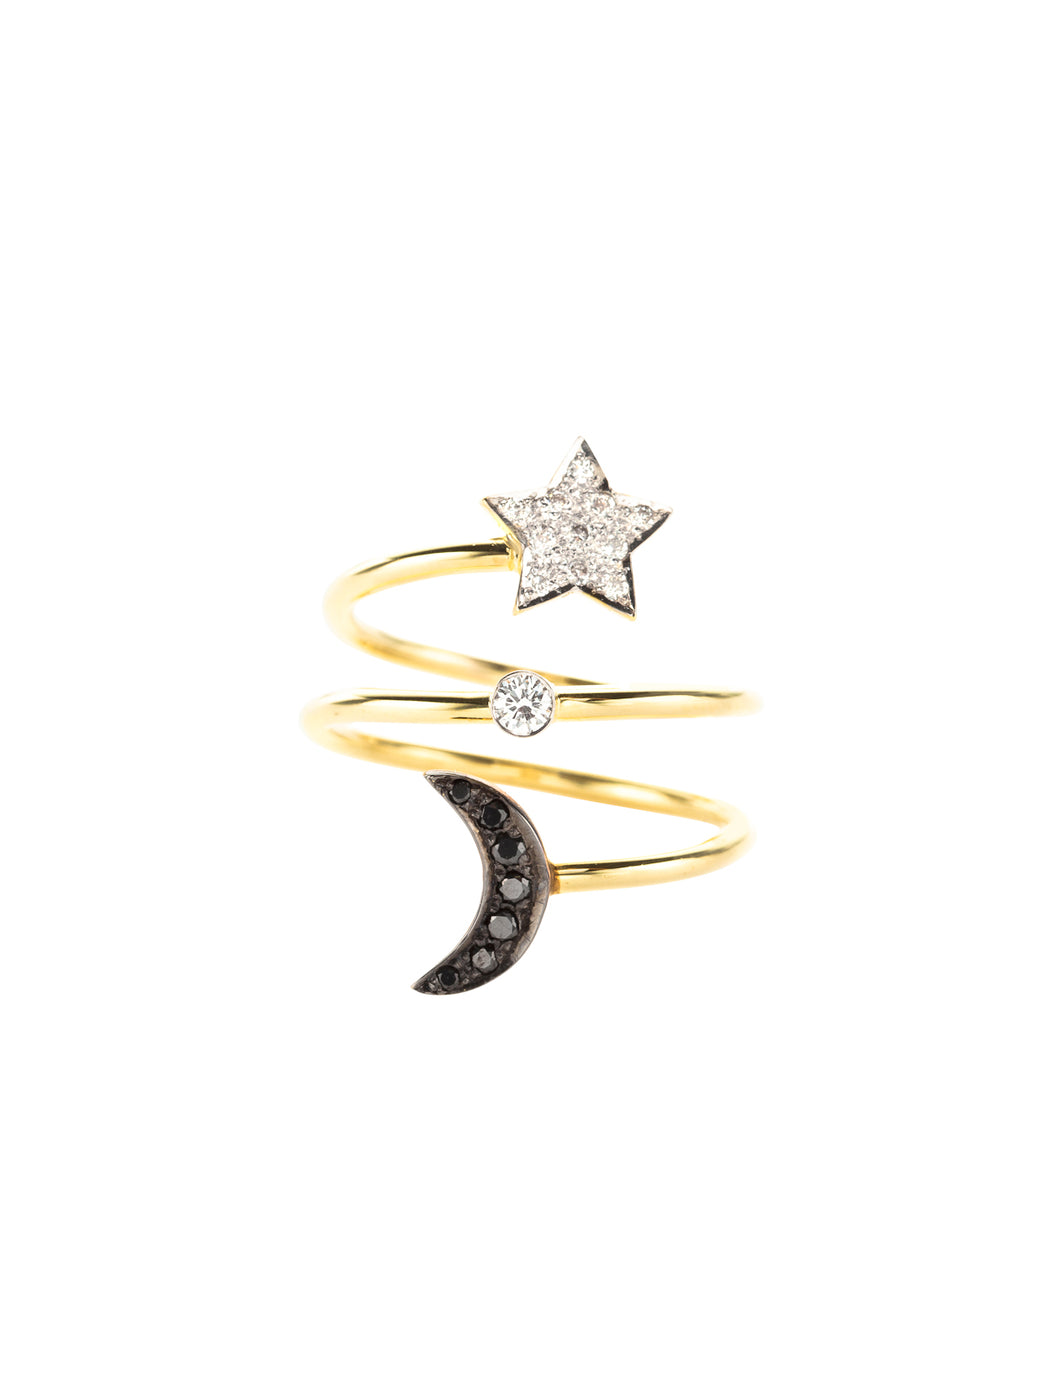 Moon & Star | Kacey K Jewelry.